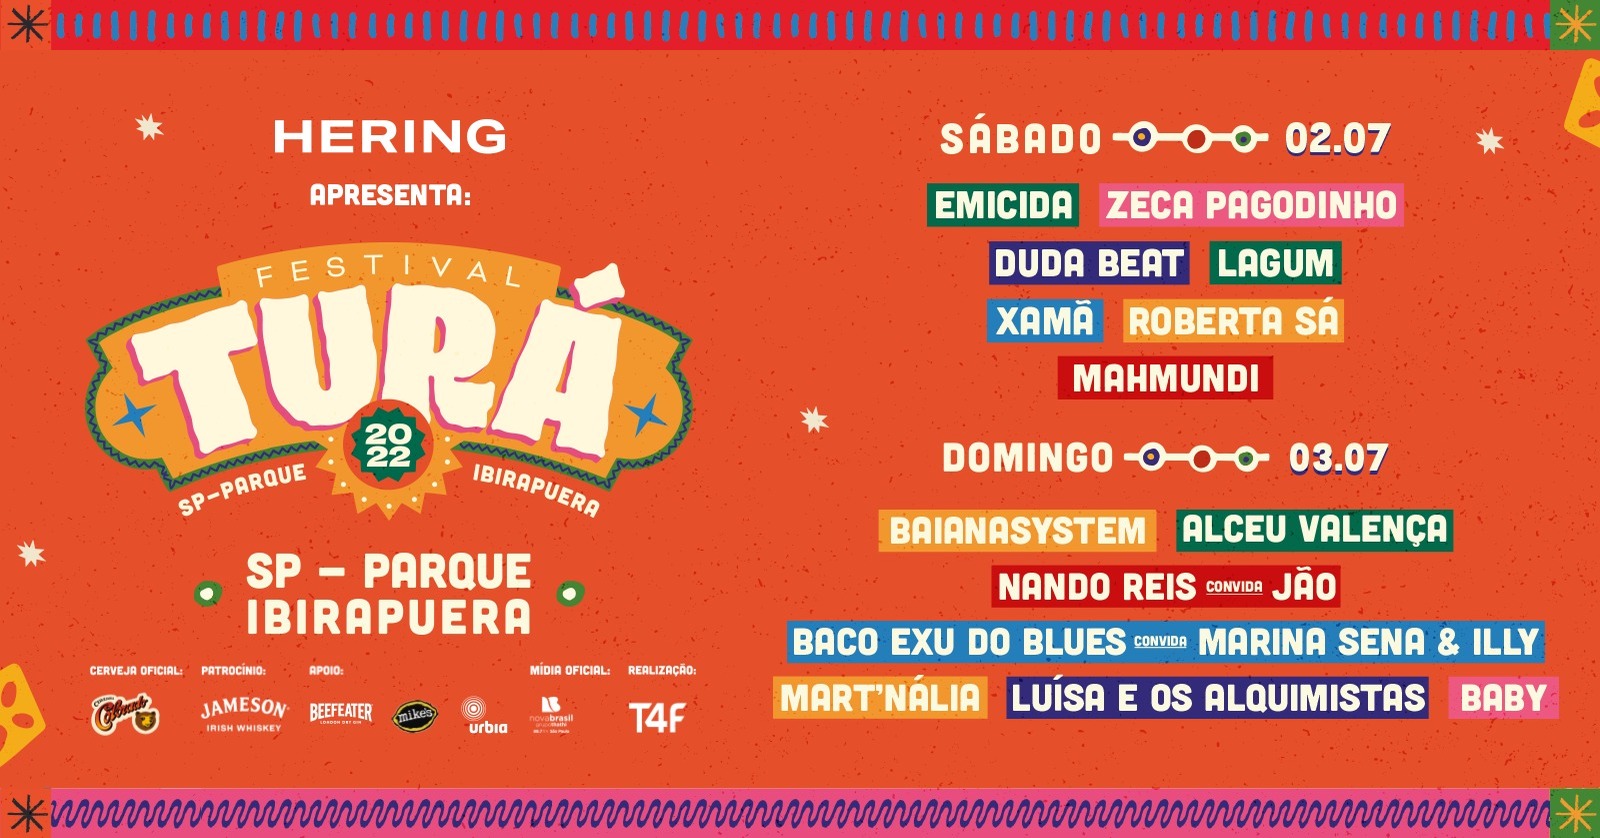 Festival Turá acontece no Parque Ibirapuera